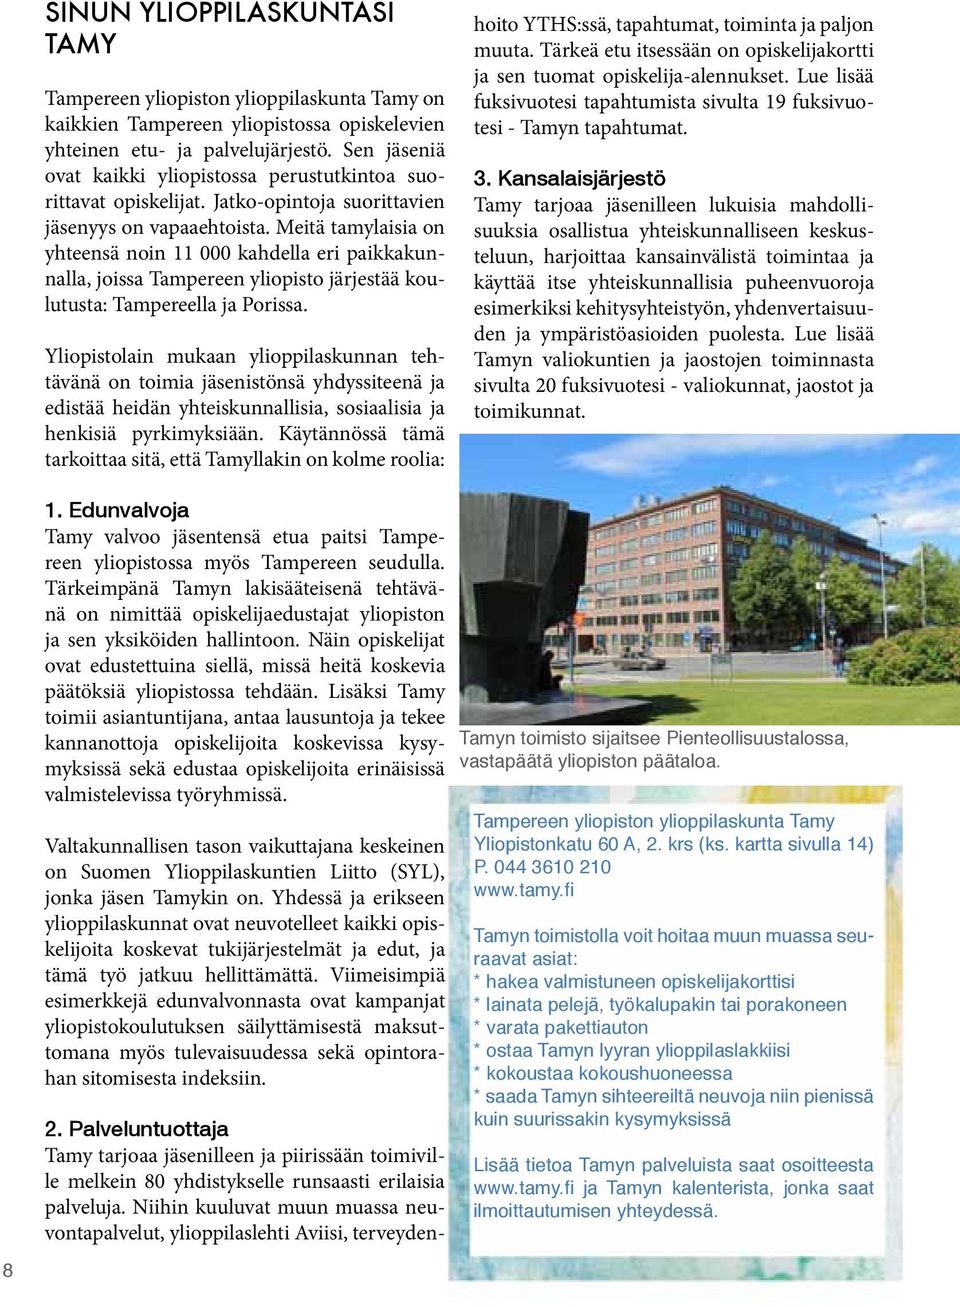 Meitä tamylaisia on yhteensä noin 11 000 kahdella eri paikkakunnalla, joissa Tampereen yliopisto järjestää koulutusta: Tampereella ja Porissa.